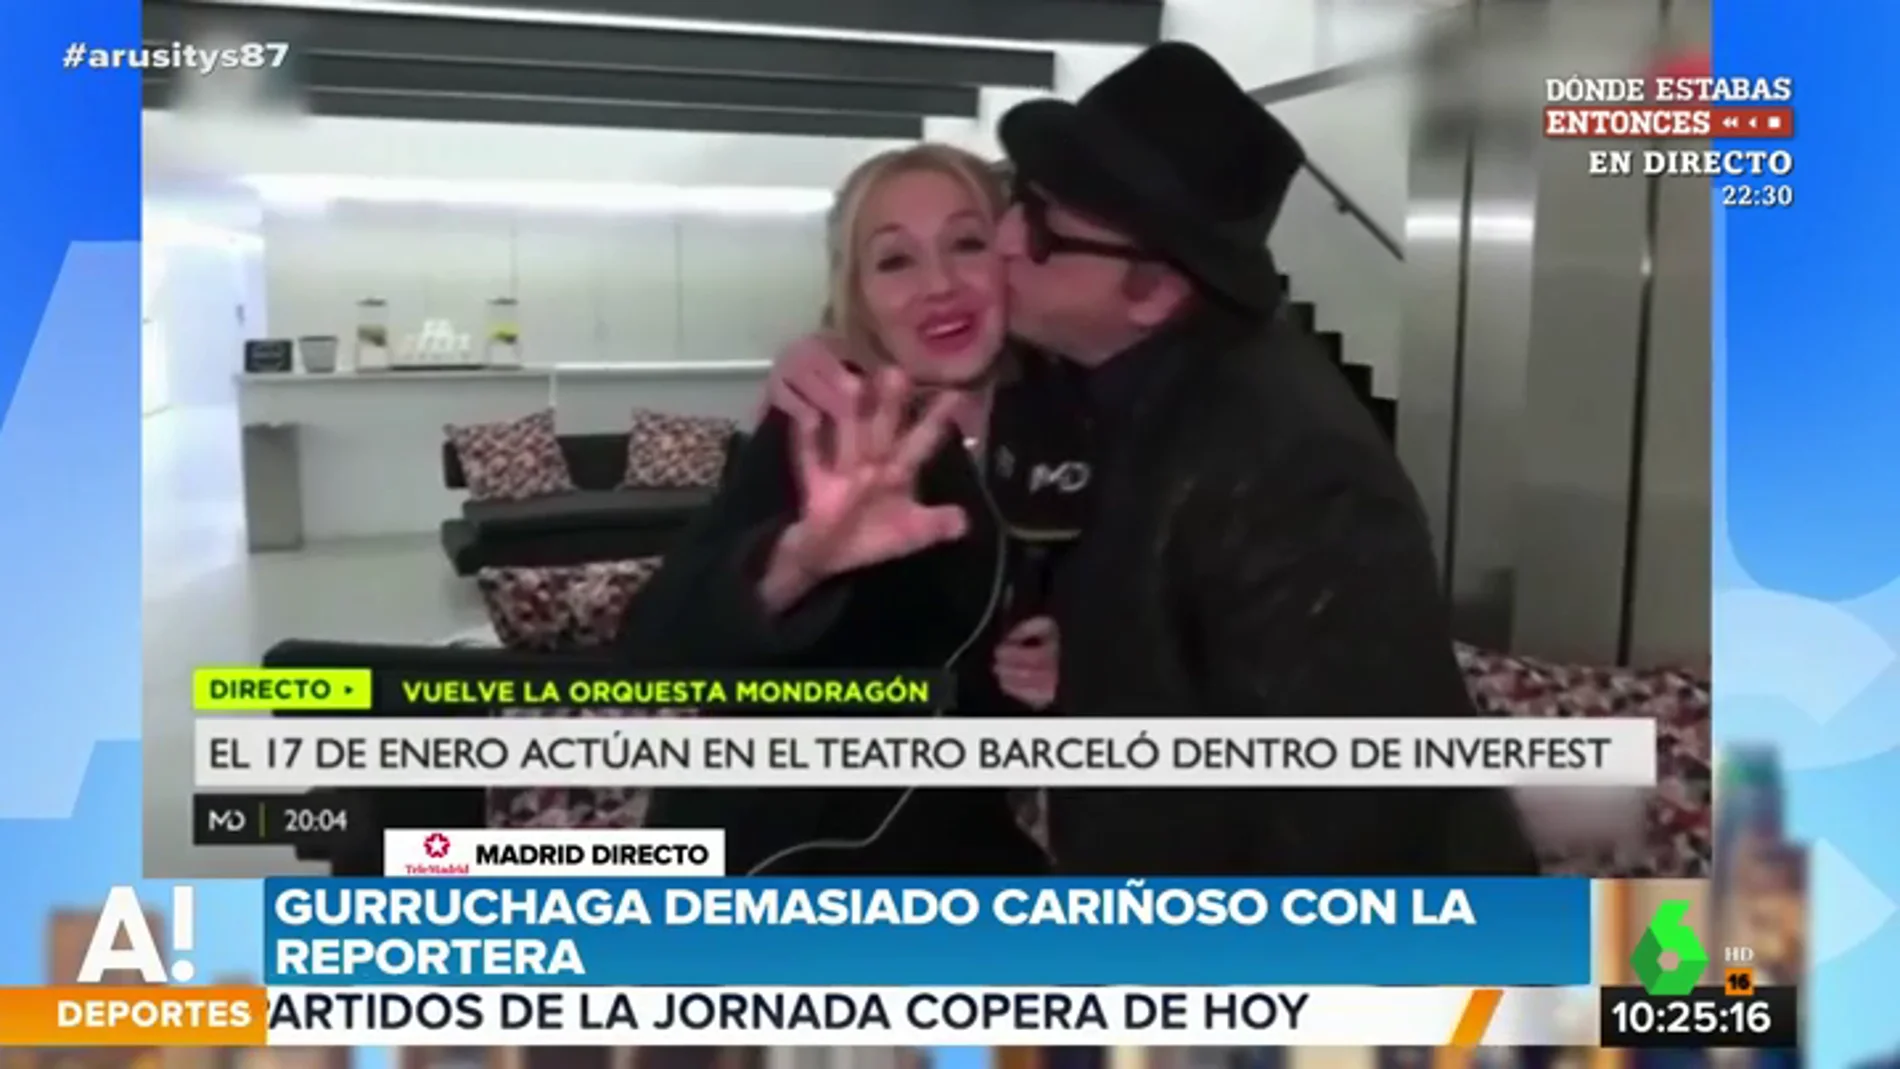 El polémico y machista vídeo de Javier Gurruchaga con una reportera